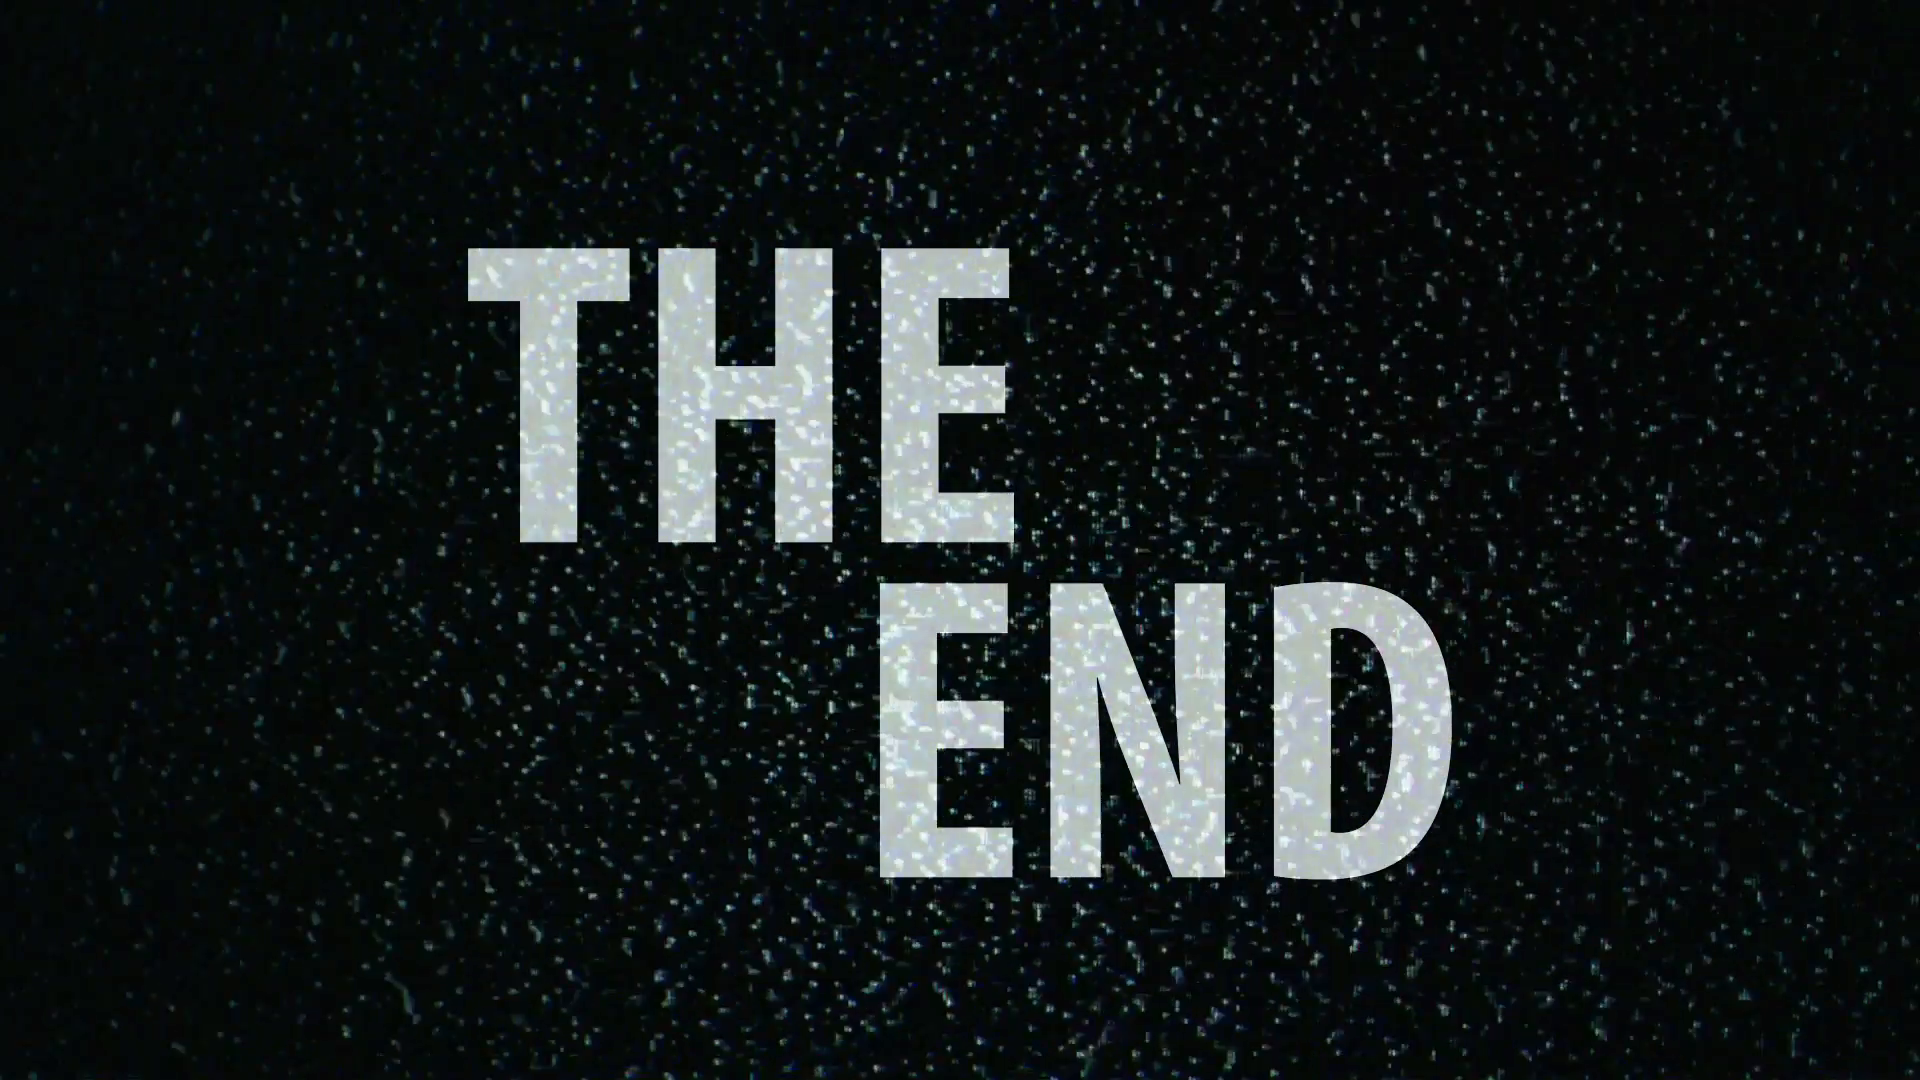 The end конец. Конец на черном фоне. Надпись конец игры. The end надпись. The end на черном фоне.